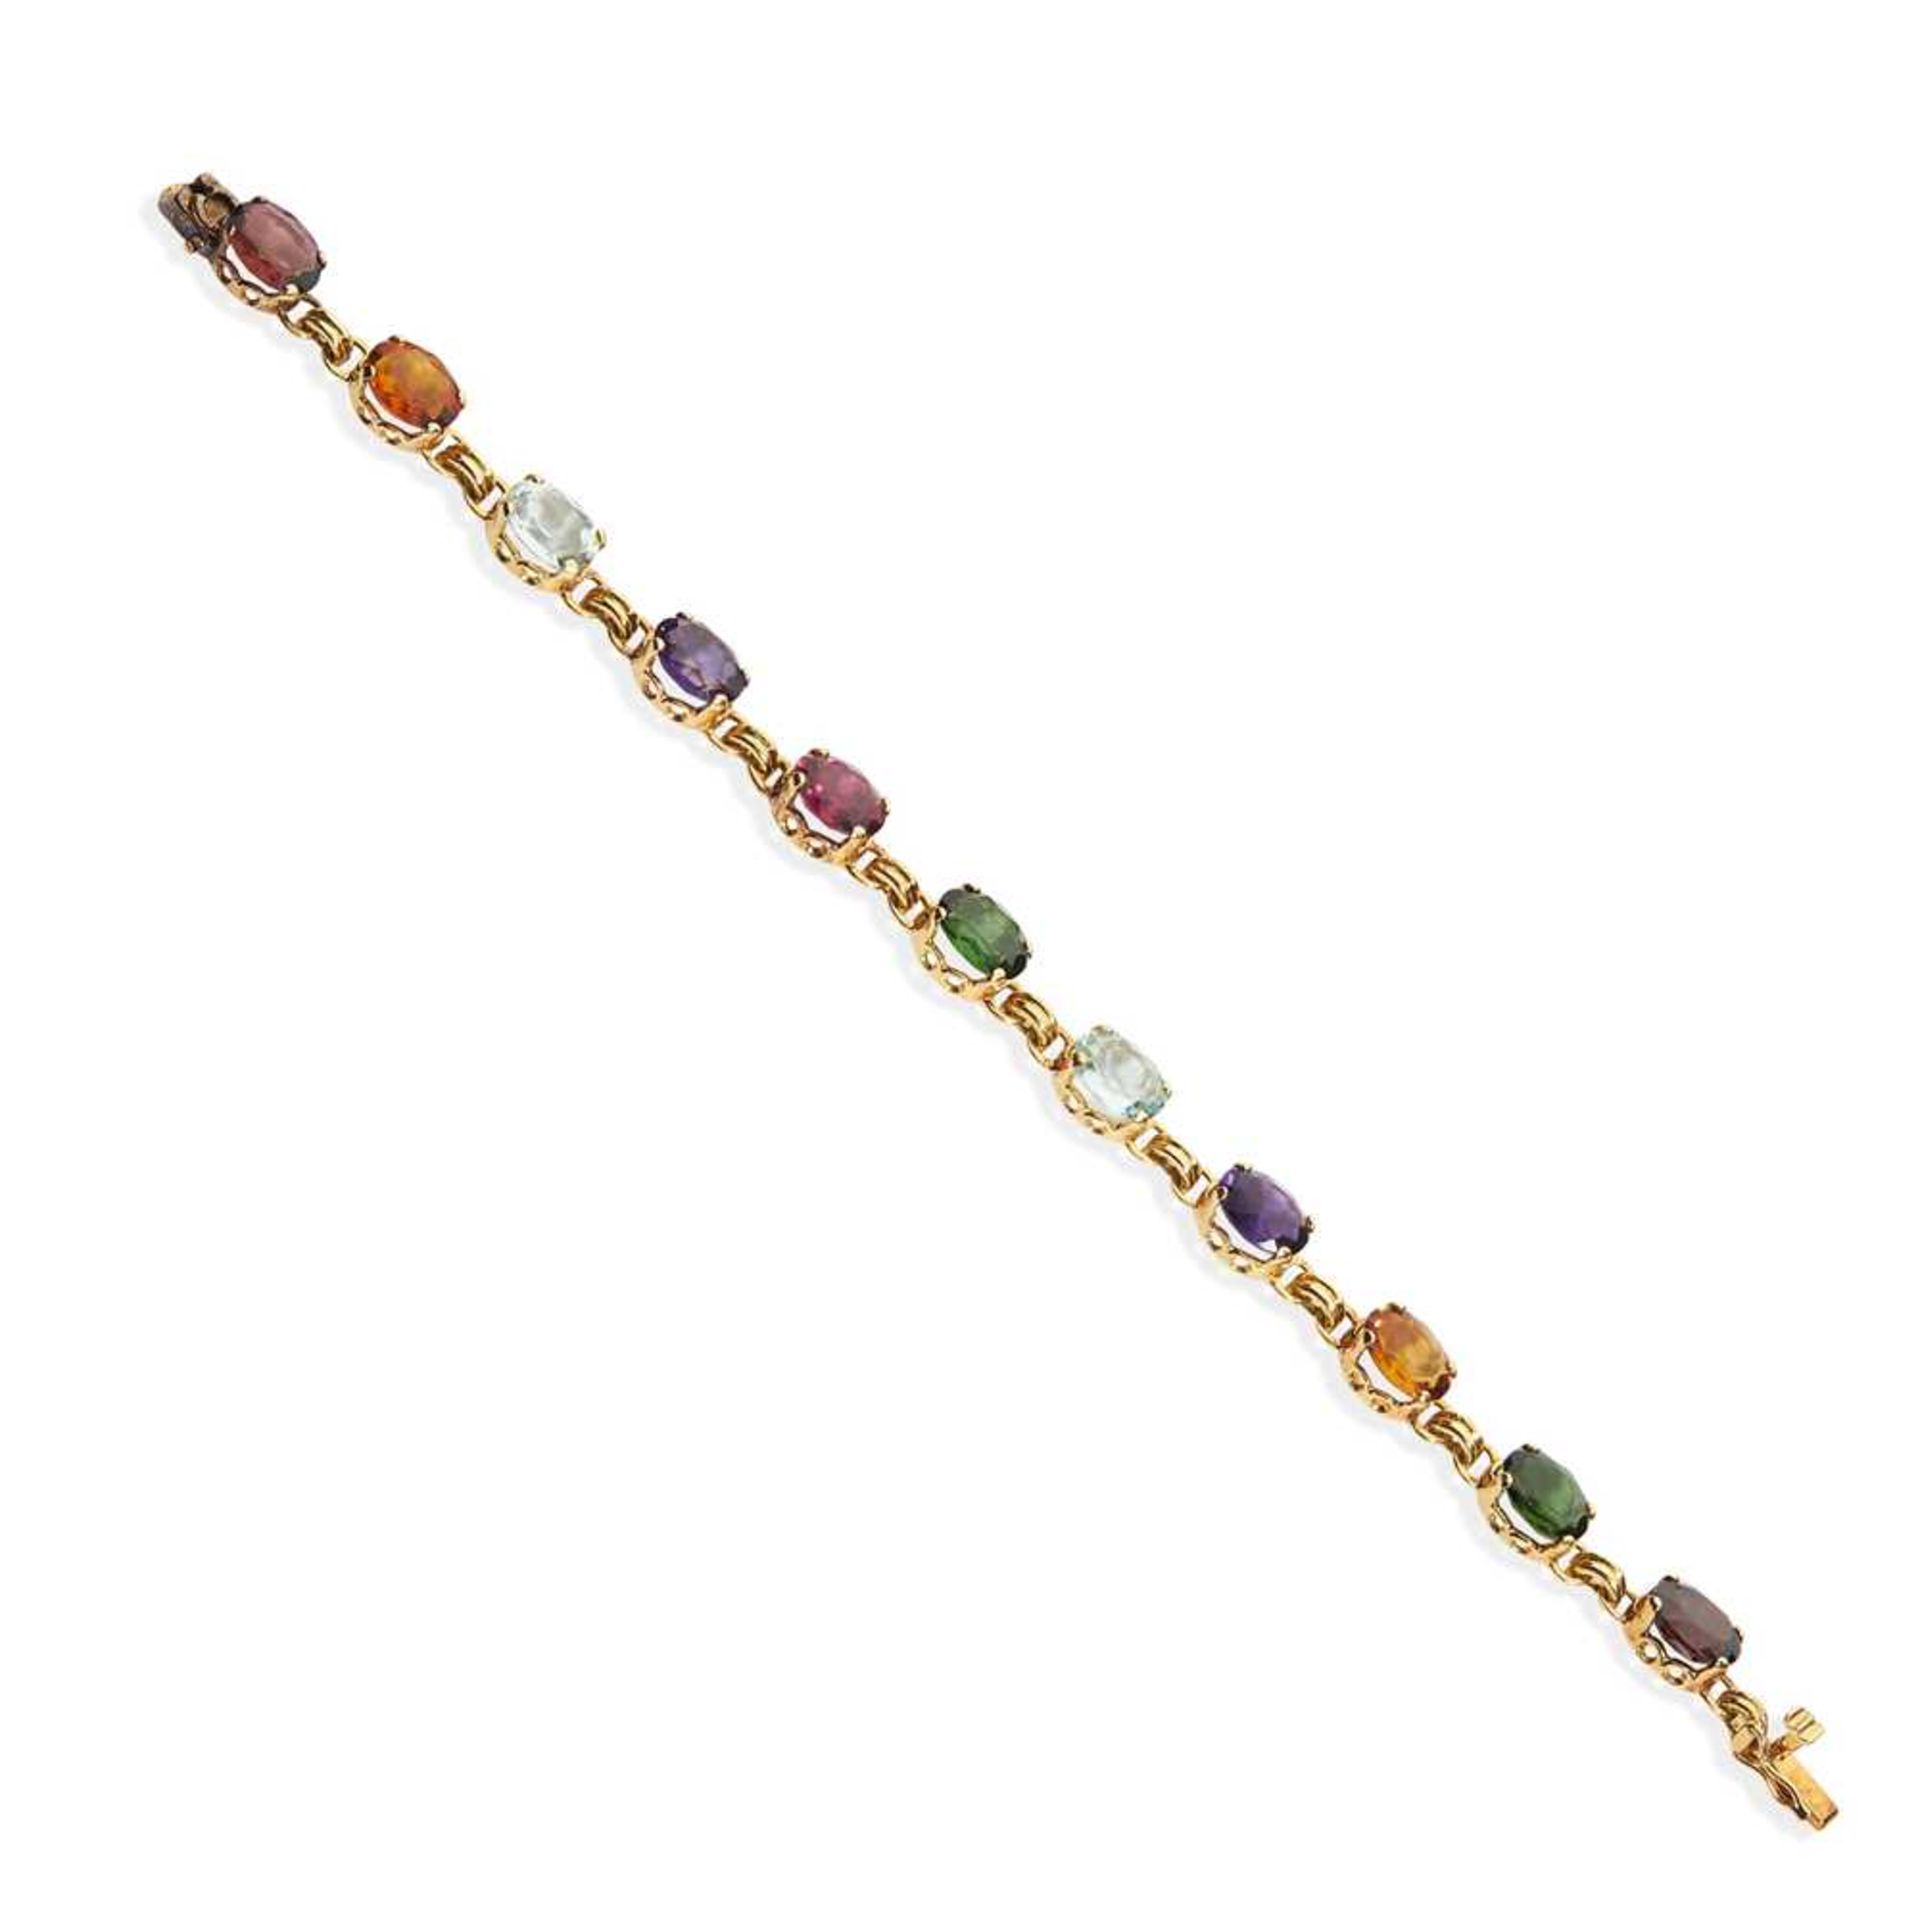 A multi-gem bracelet